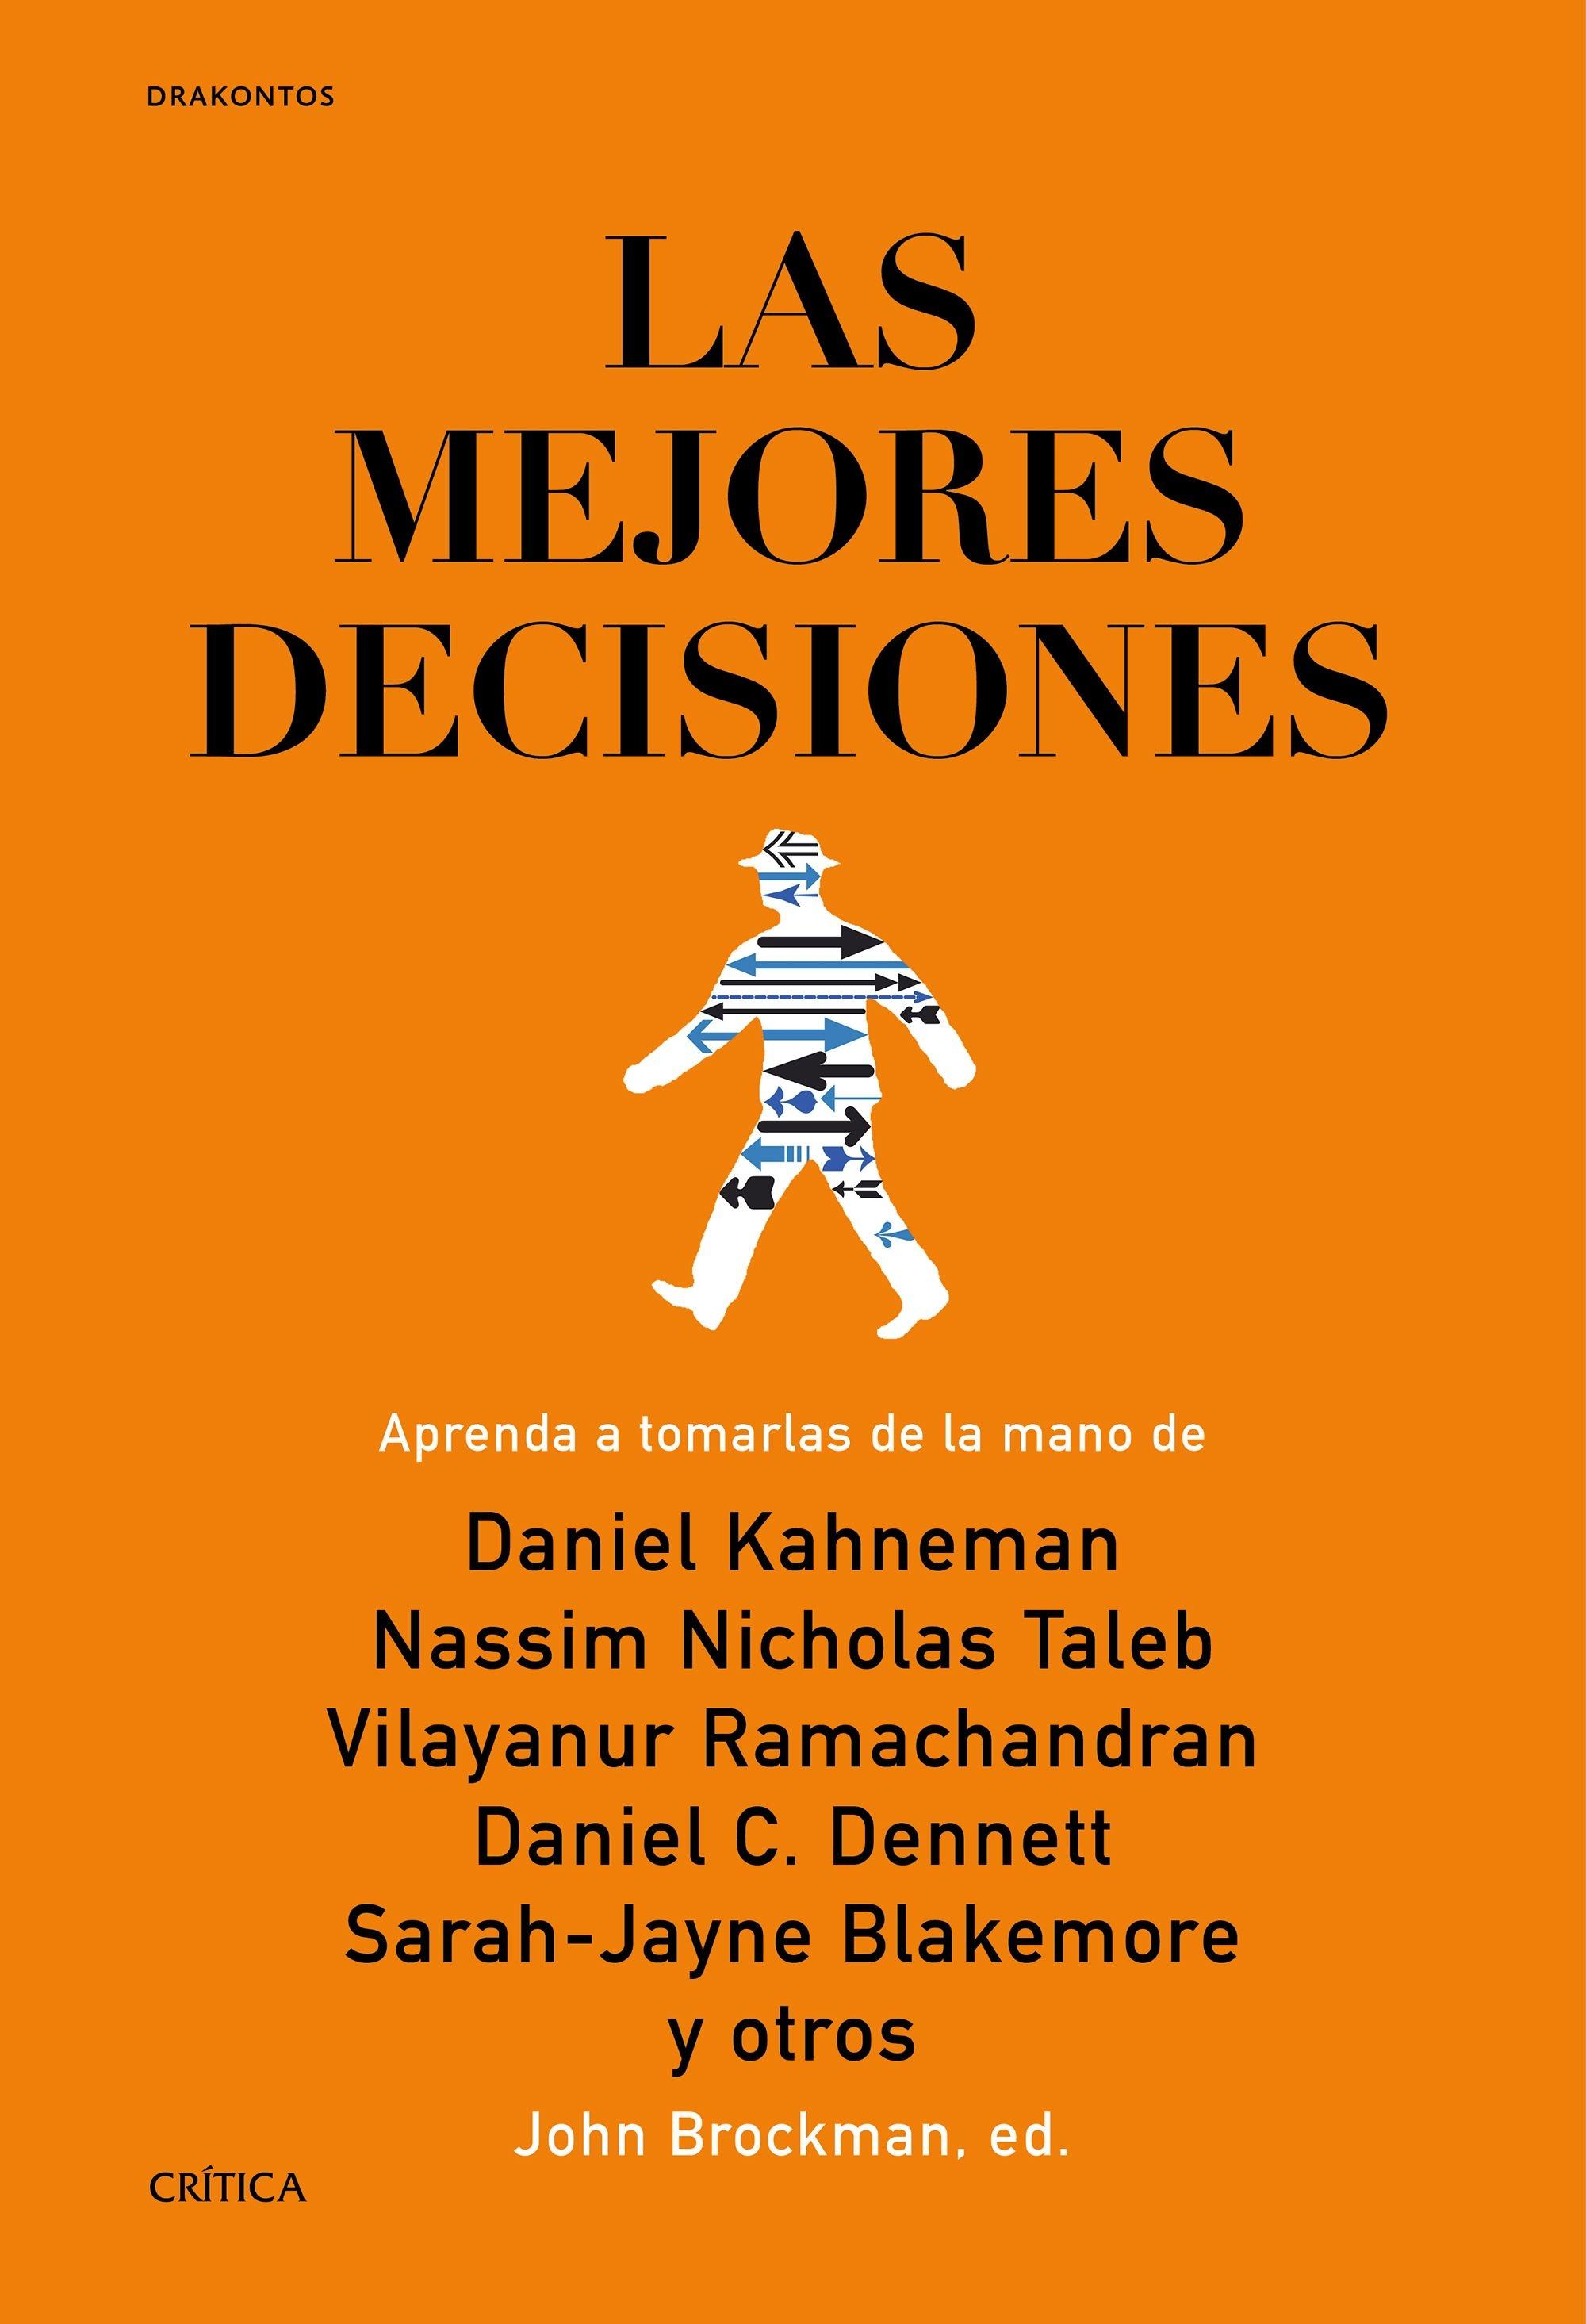 Las mejores decisiones "Aprenda a tomarlas de la mano de Daniel Kahneman Nassim Nicholas Taleb V". 